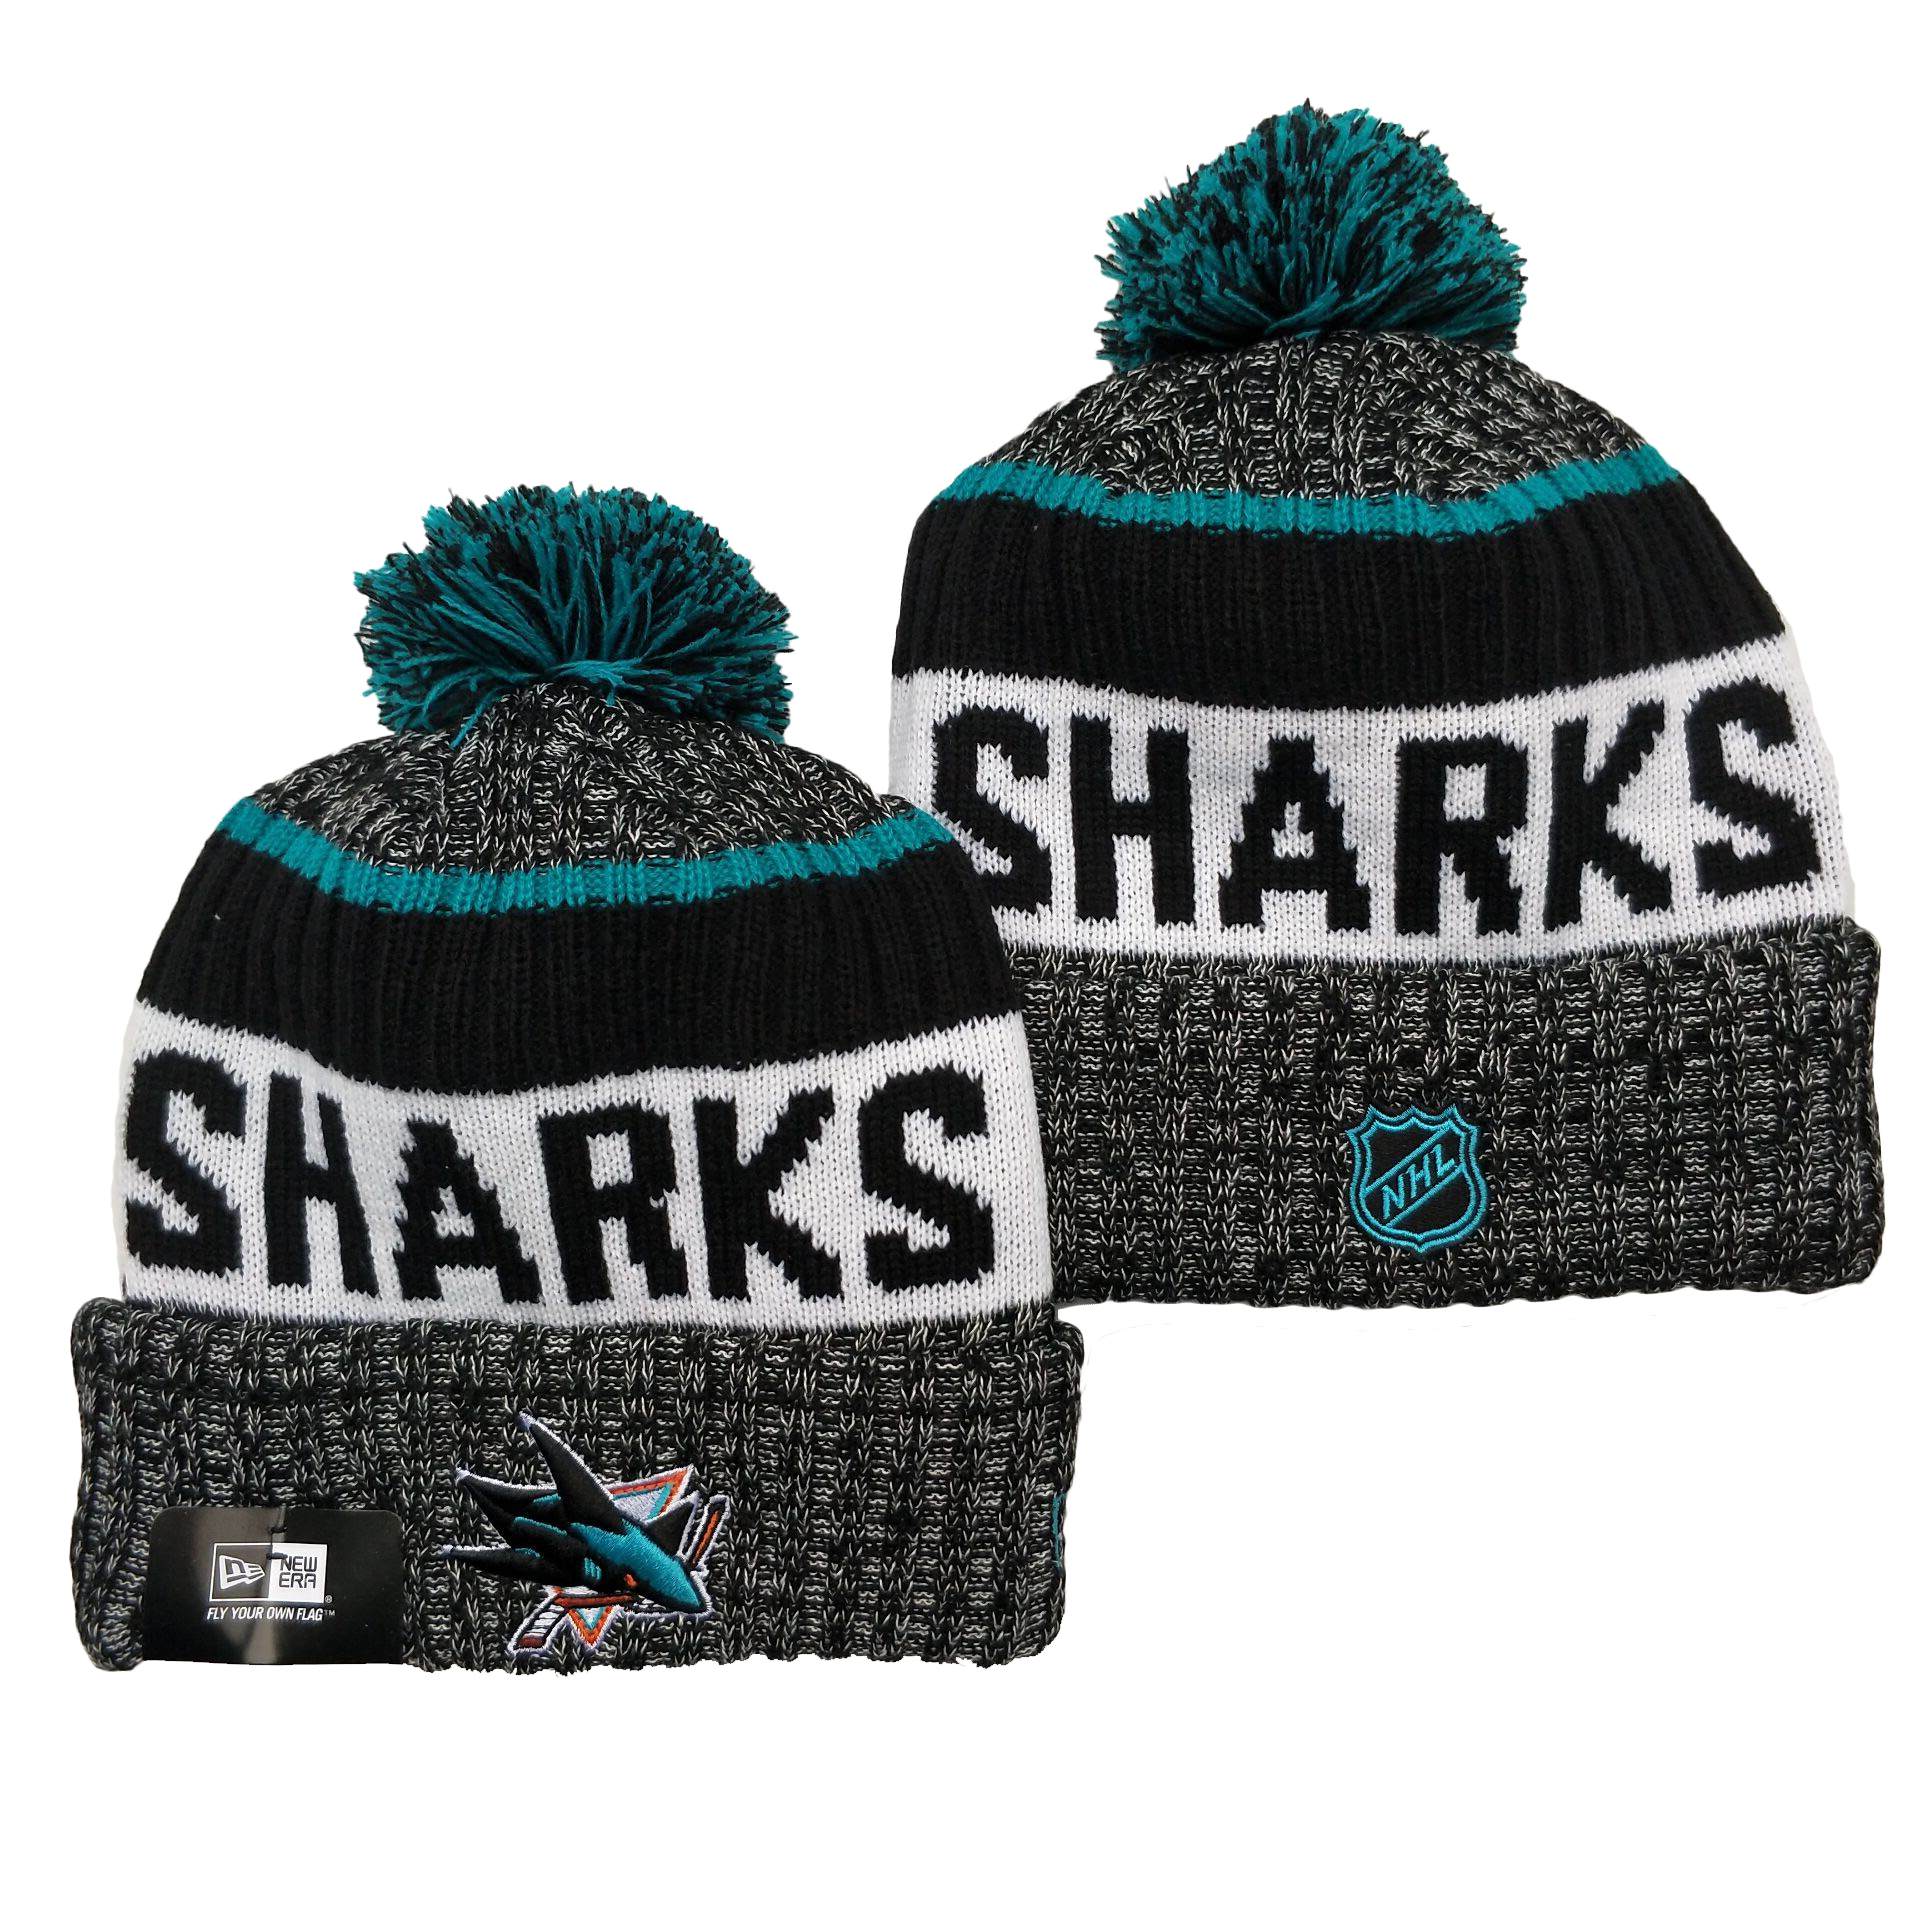 San Jose Sharks Knit Hats 002